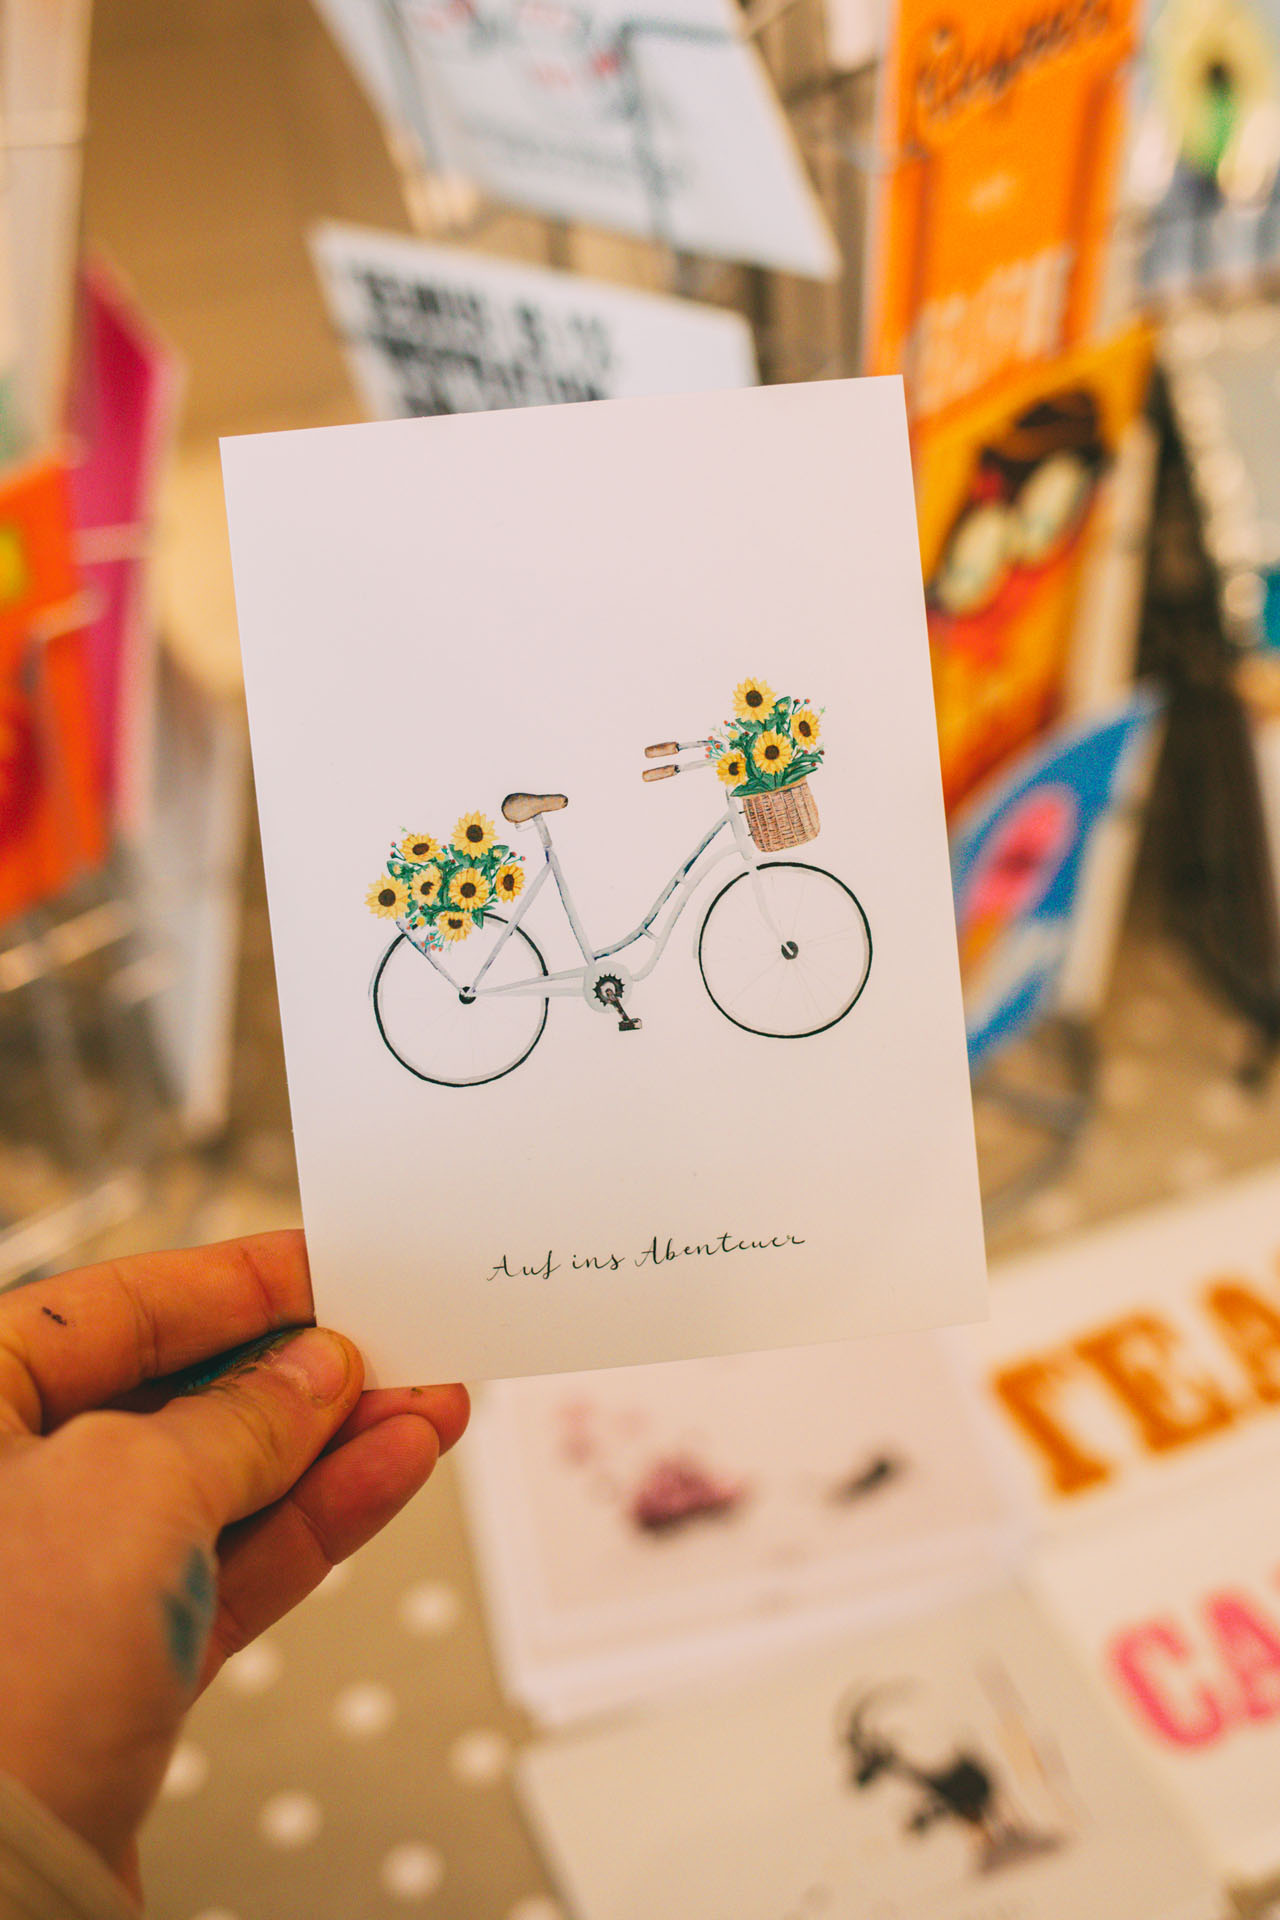 Zu sehen ist eine Postkarte mit einem gemalten Fahrrad und der Aufschrift: Auf ins Abenteuer